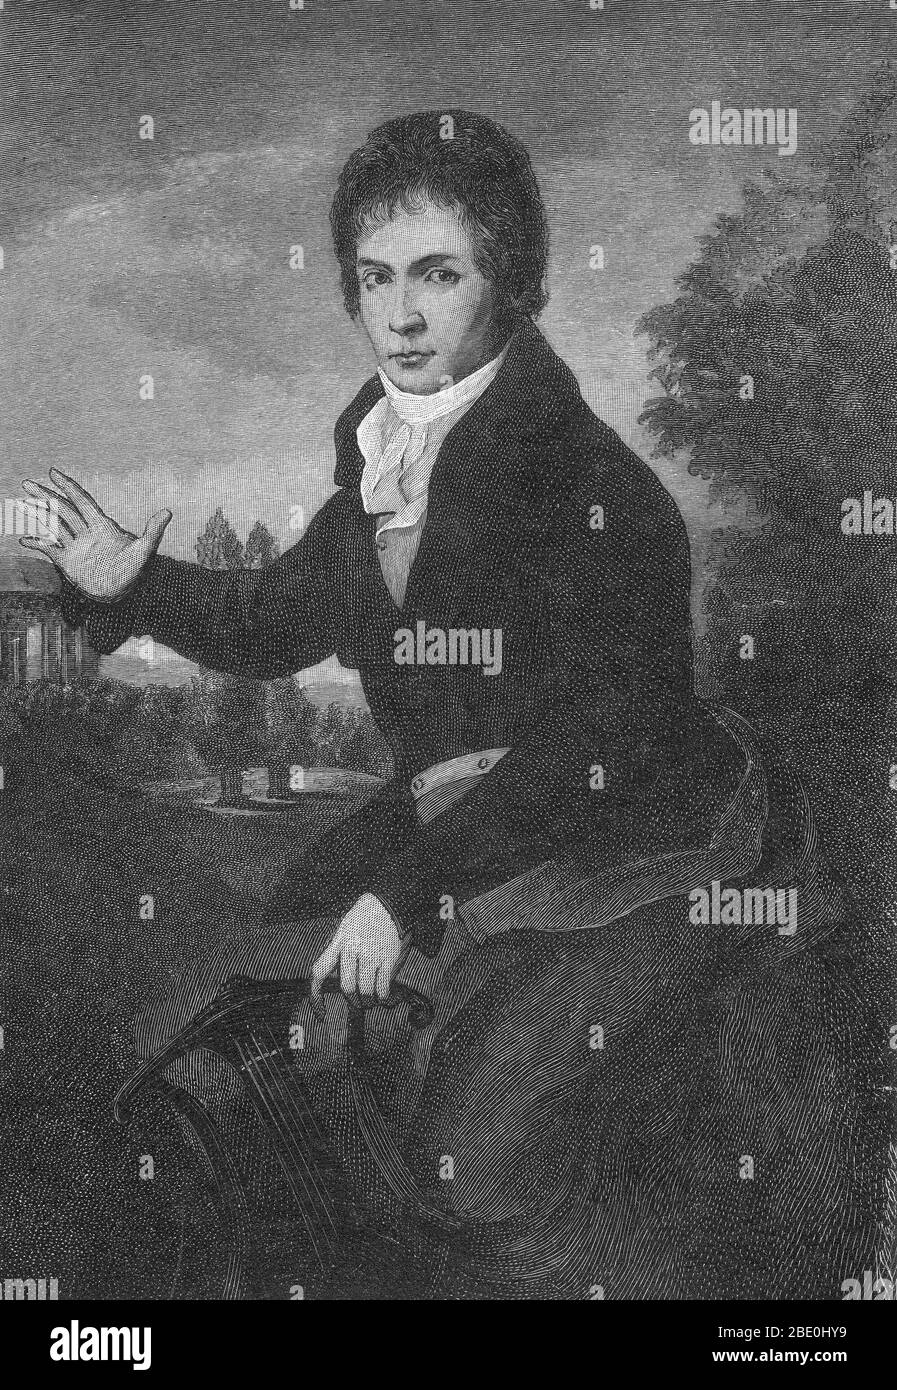 Ludwig van Beethoven (baptisé le 17 décembre 1770 au 26 mars 1827) fut compositeur et pianiste allemand. Figure cruciale dans la transition entre les époques classique et romantique de la musique d'art occidentale, il reste l'un des compositeurs les plus célèbres et les plus influents. Beethoven est né à Bonn, mais a déménagé à Vienne au début des années 20, étudiant avec Joseph Haydn et gagnant rapidement une réputation de pianiste virtuose. Son audition a commencé à se détériorer à la fin de ses années vingt, mais il a continué à composer, à conduire et à exécuter, même après être complètement sourd. En 1800 environ, son audition a commencé à dissuader Banque D'Images